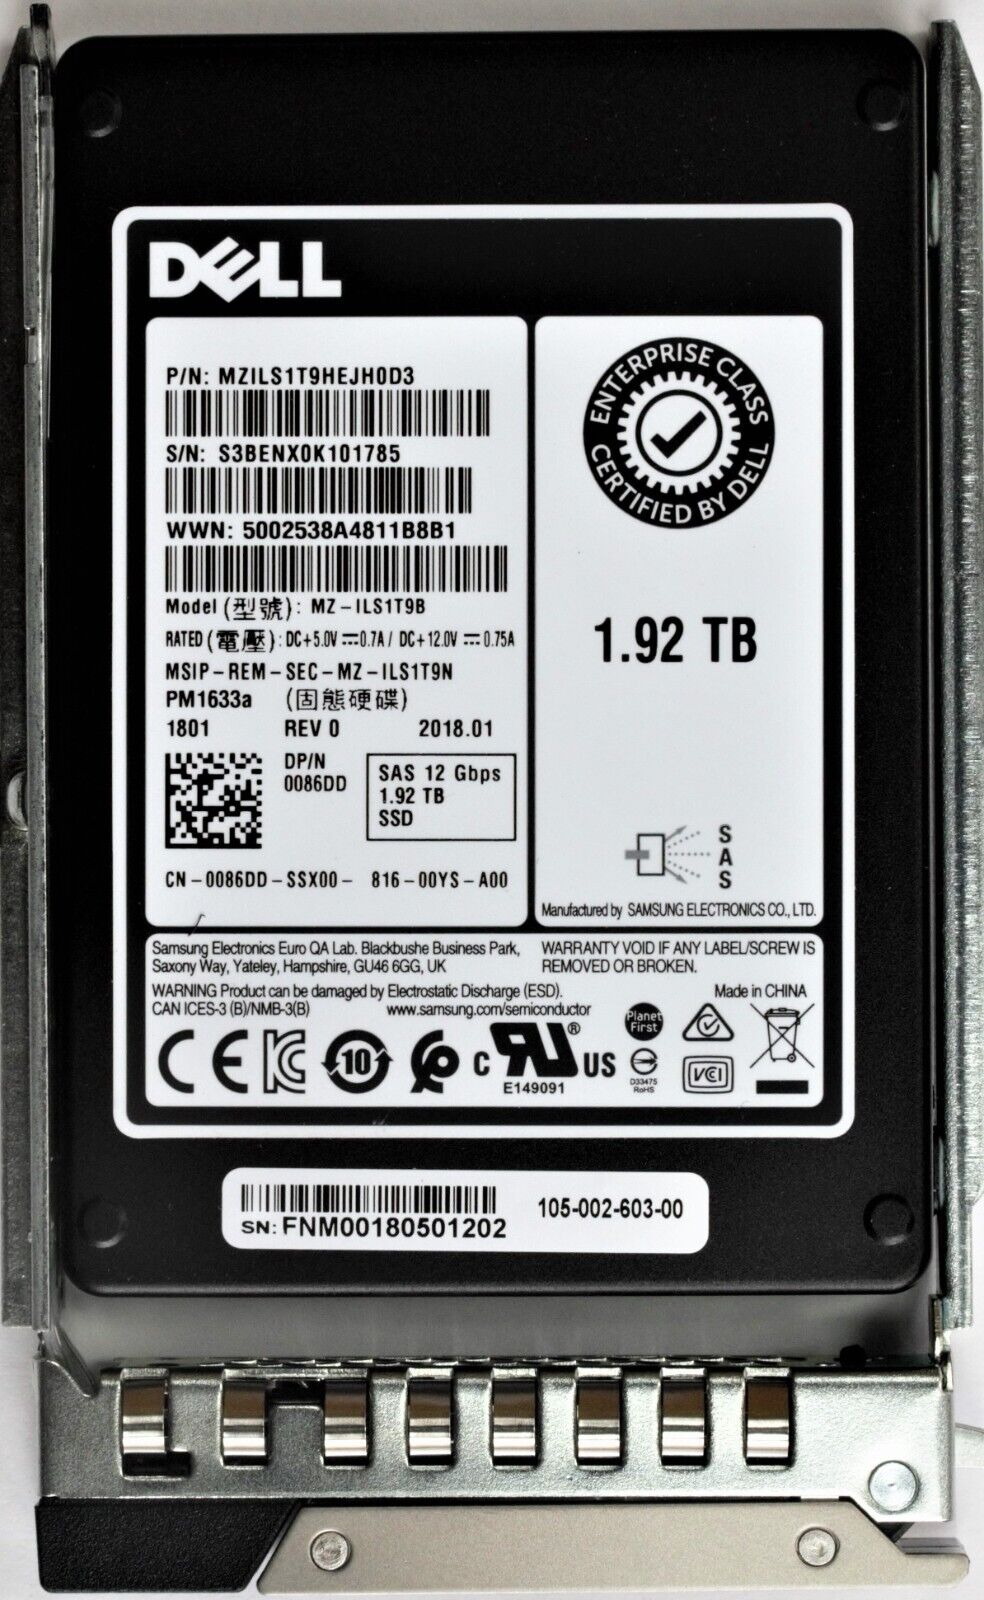 Dell 14G 1.92TB 2.5-inch Enterprise SAS 12Gbps Hotplug SSD Samsung PM1633a 086DD